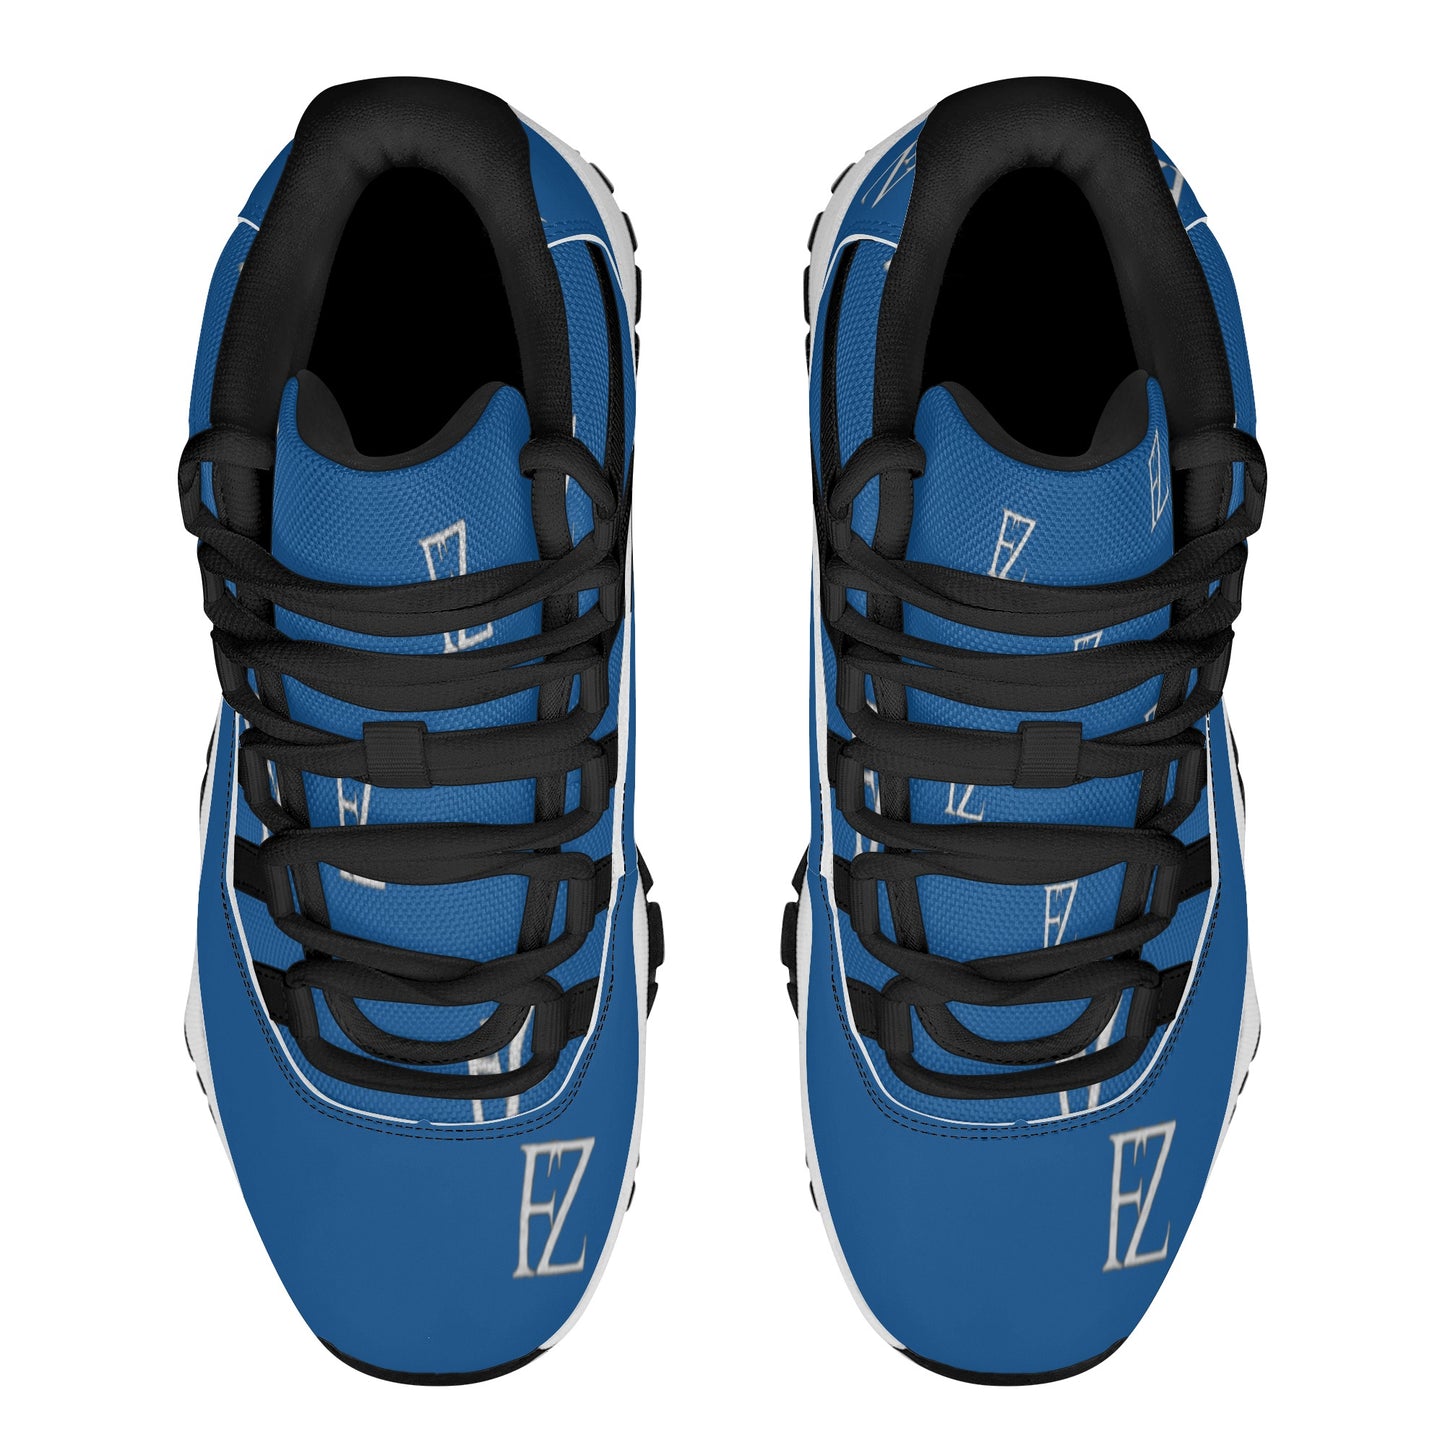 FZ Men's Upgraded Retro Sneakers